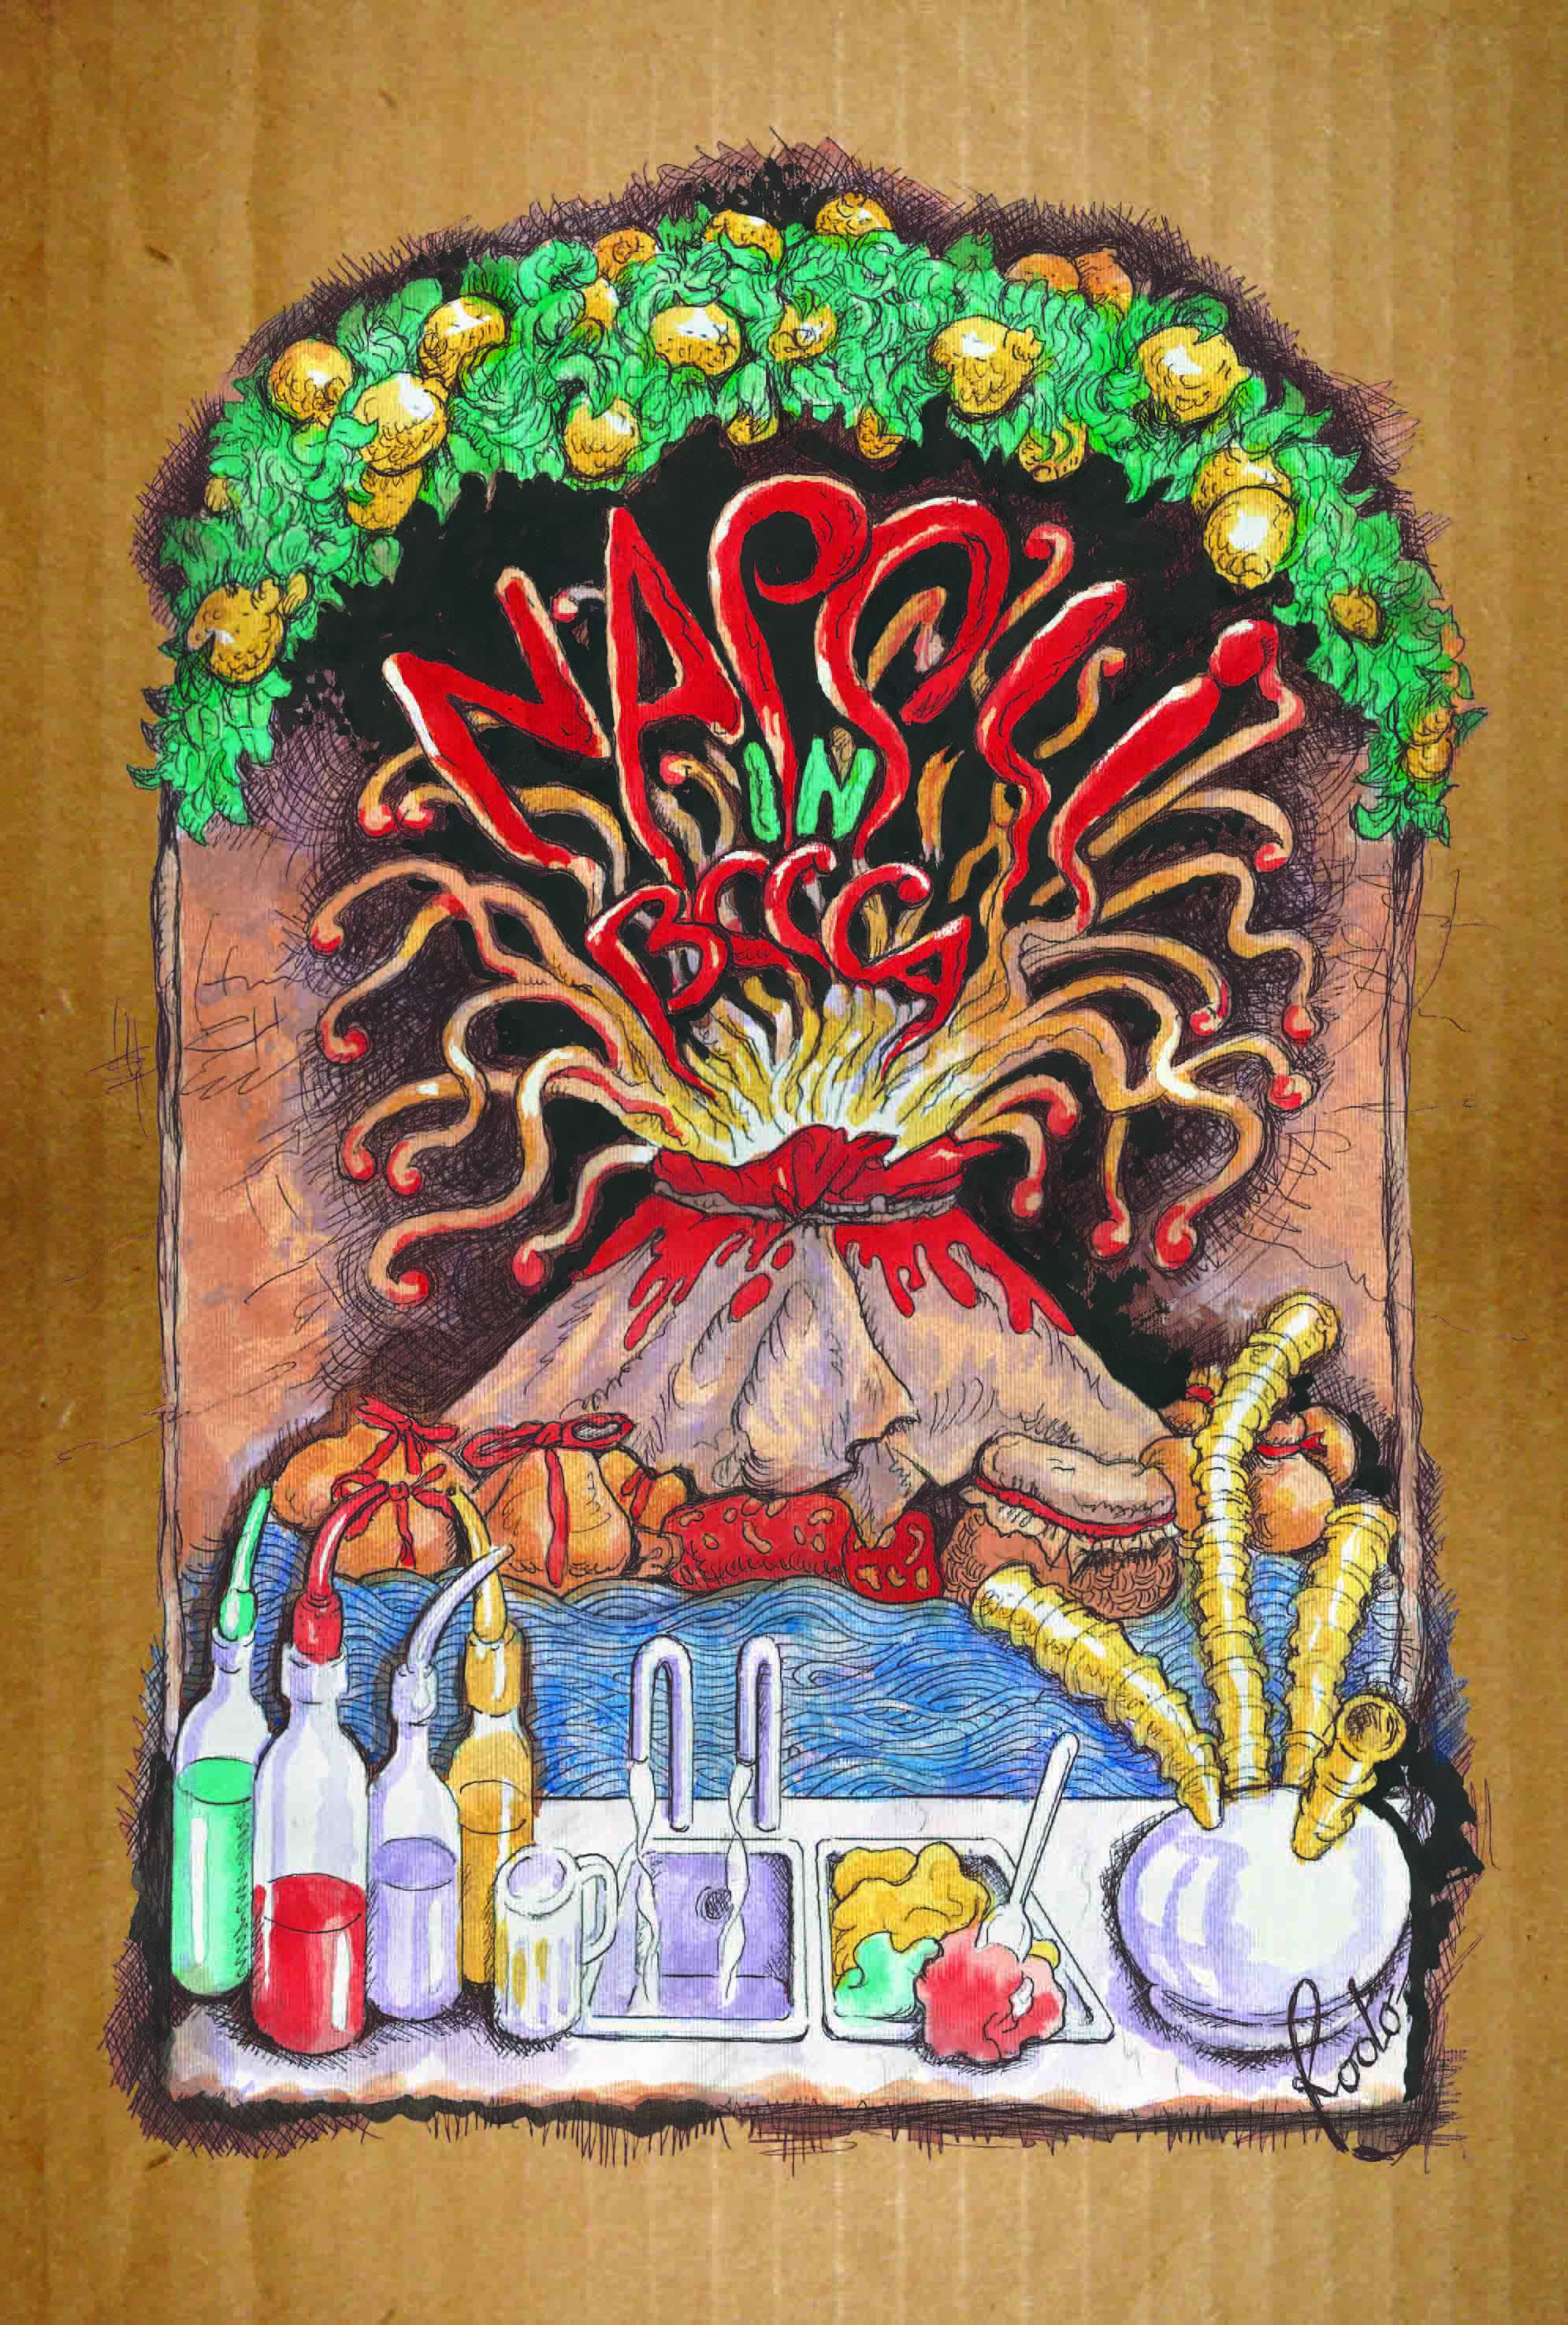 Napoli in bocca il nuovo libro di Csaba Dalla Zorza dedicato alla cucina  napoletana - Effetto Food